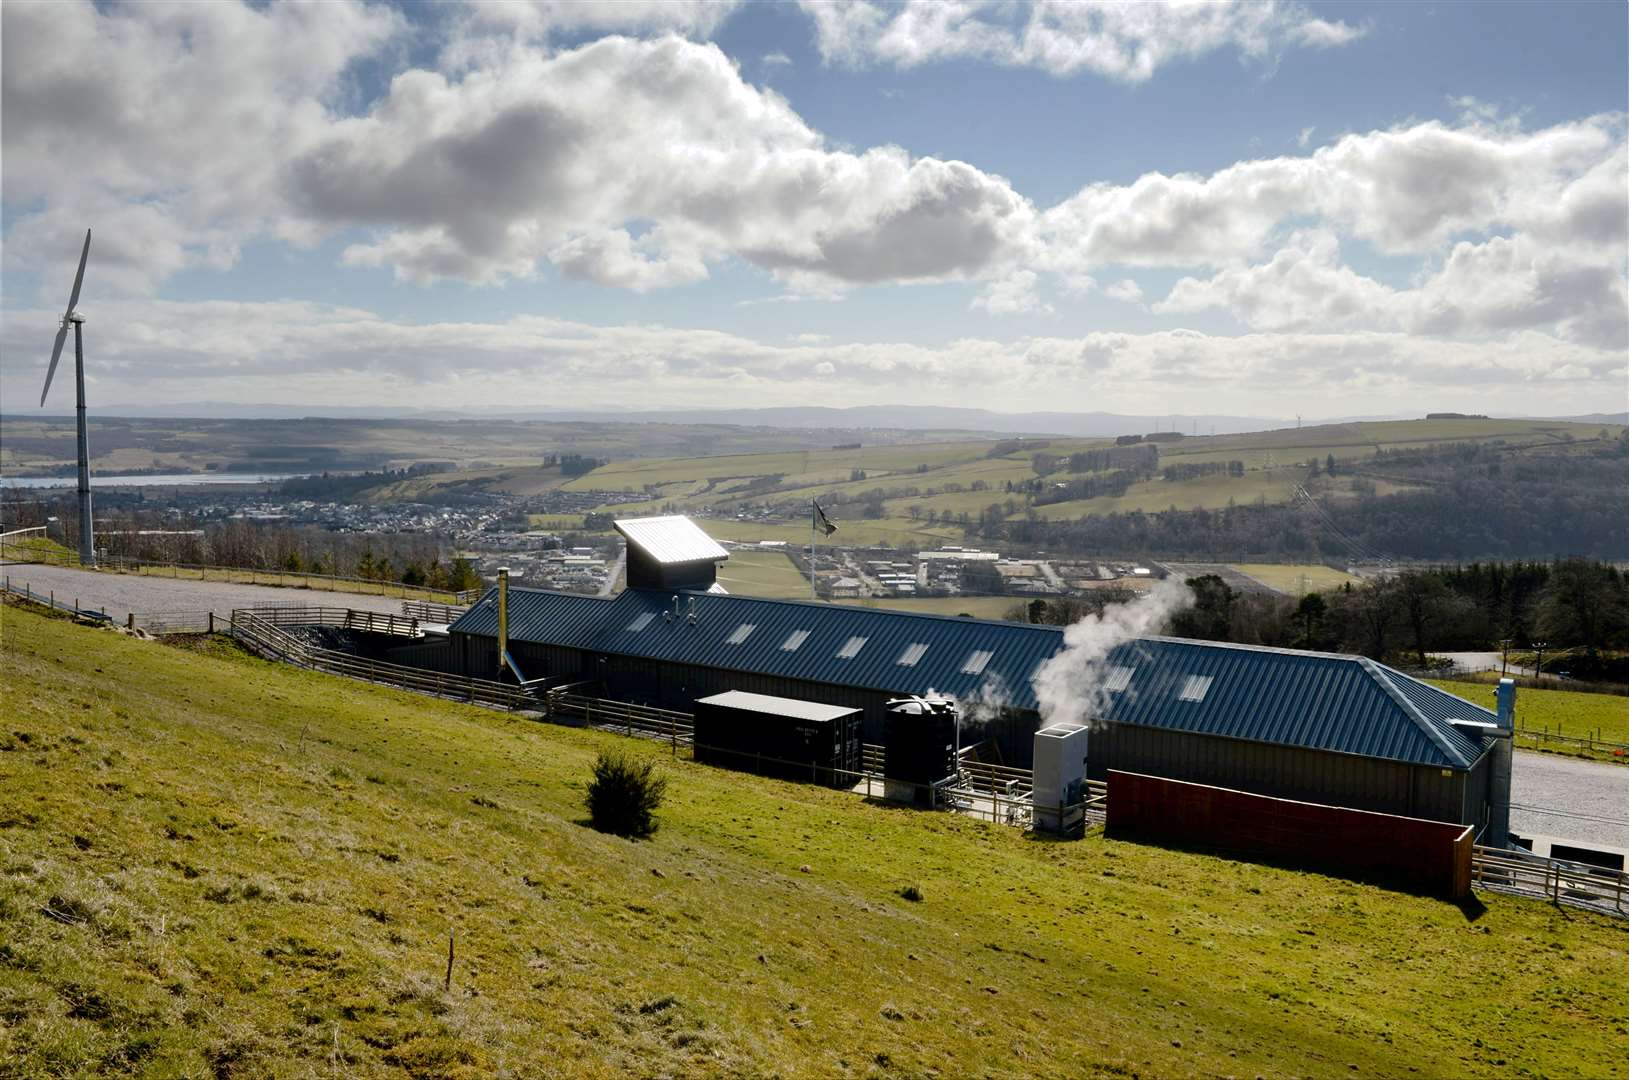 GlenWyvis Distillery has concerns about the scheme.